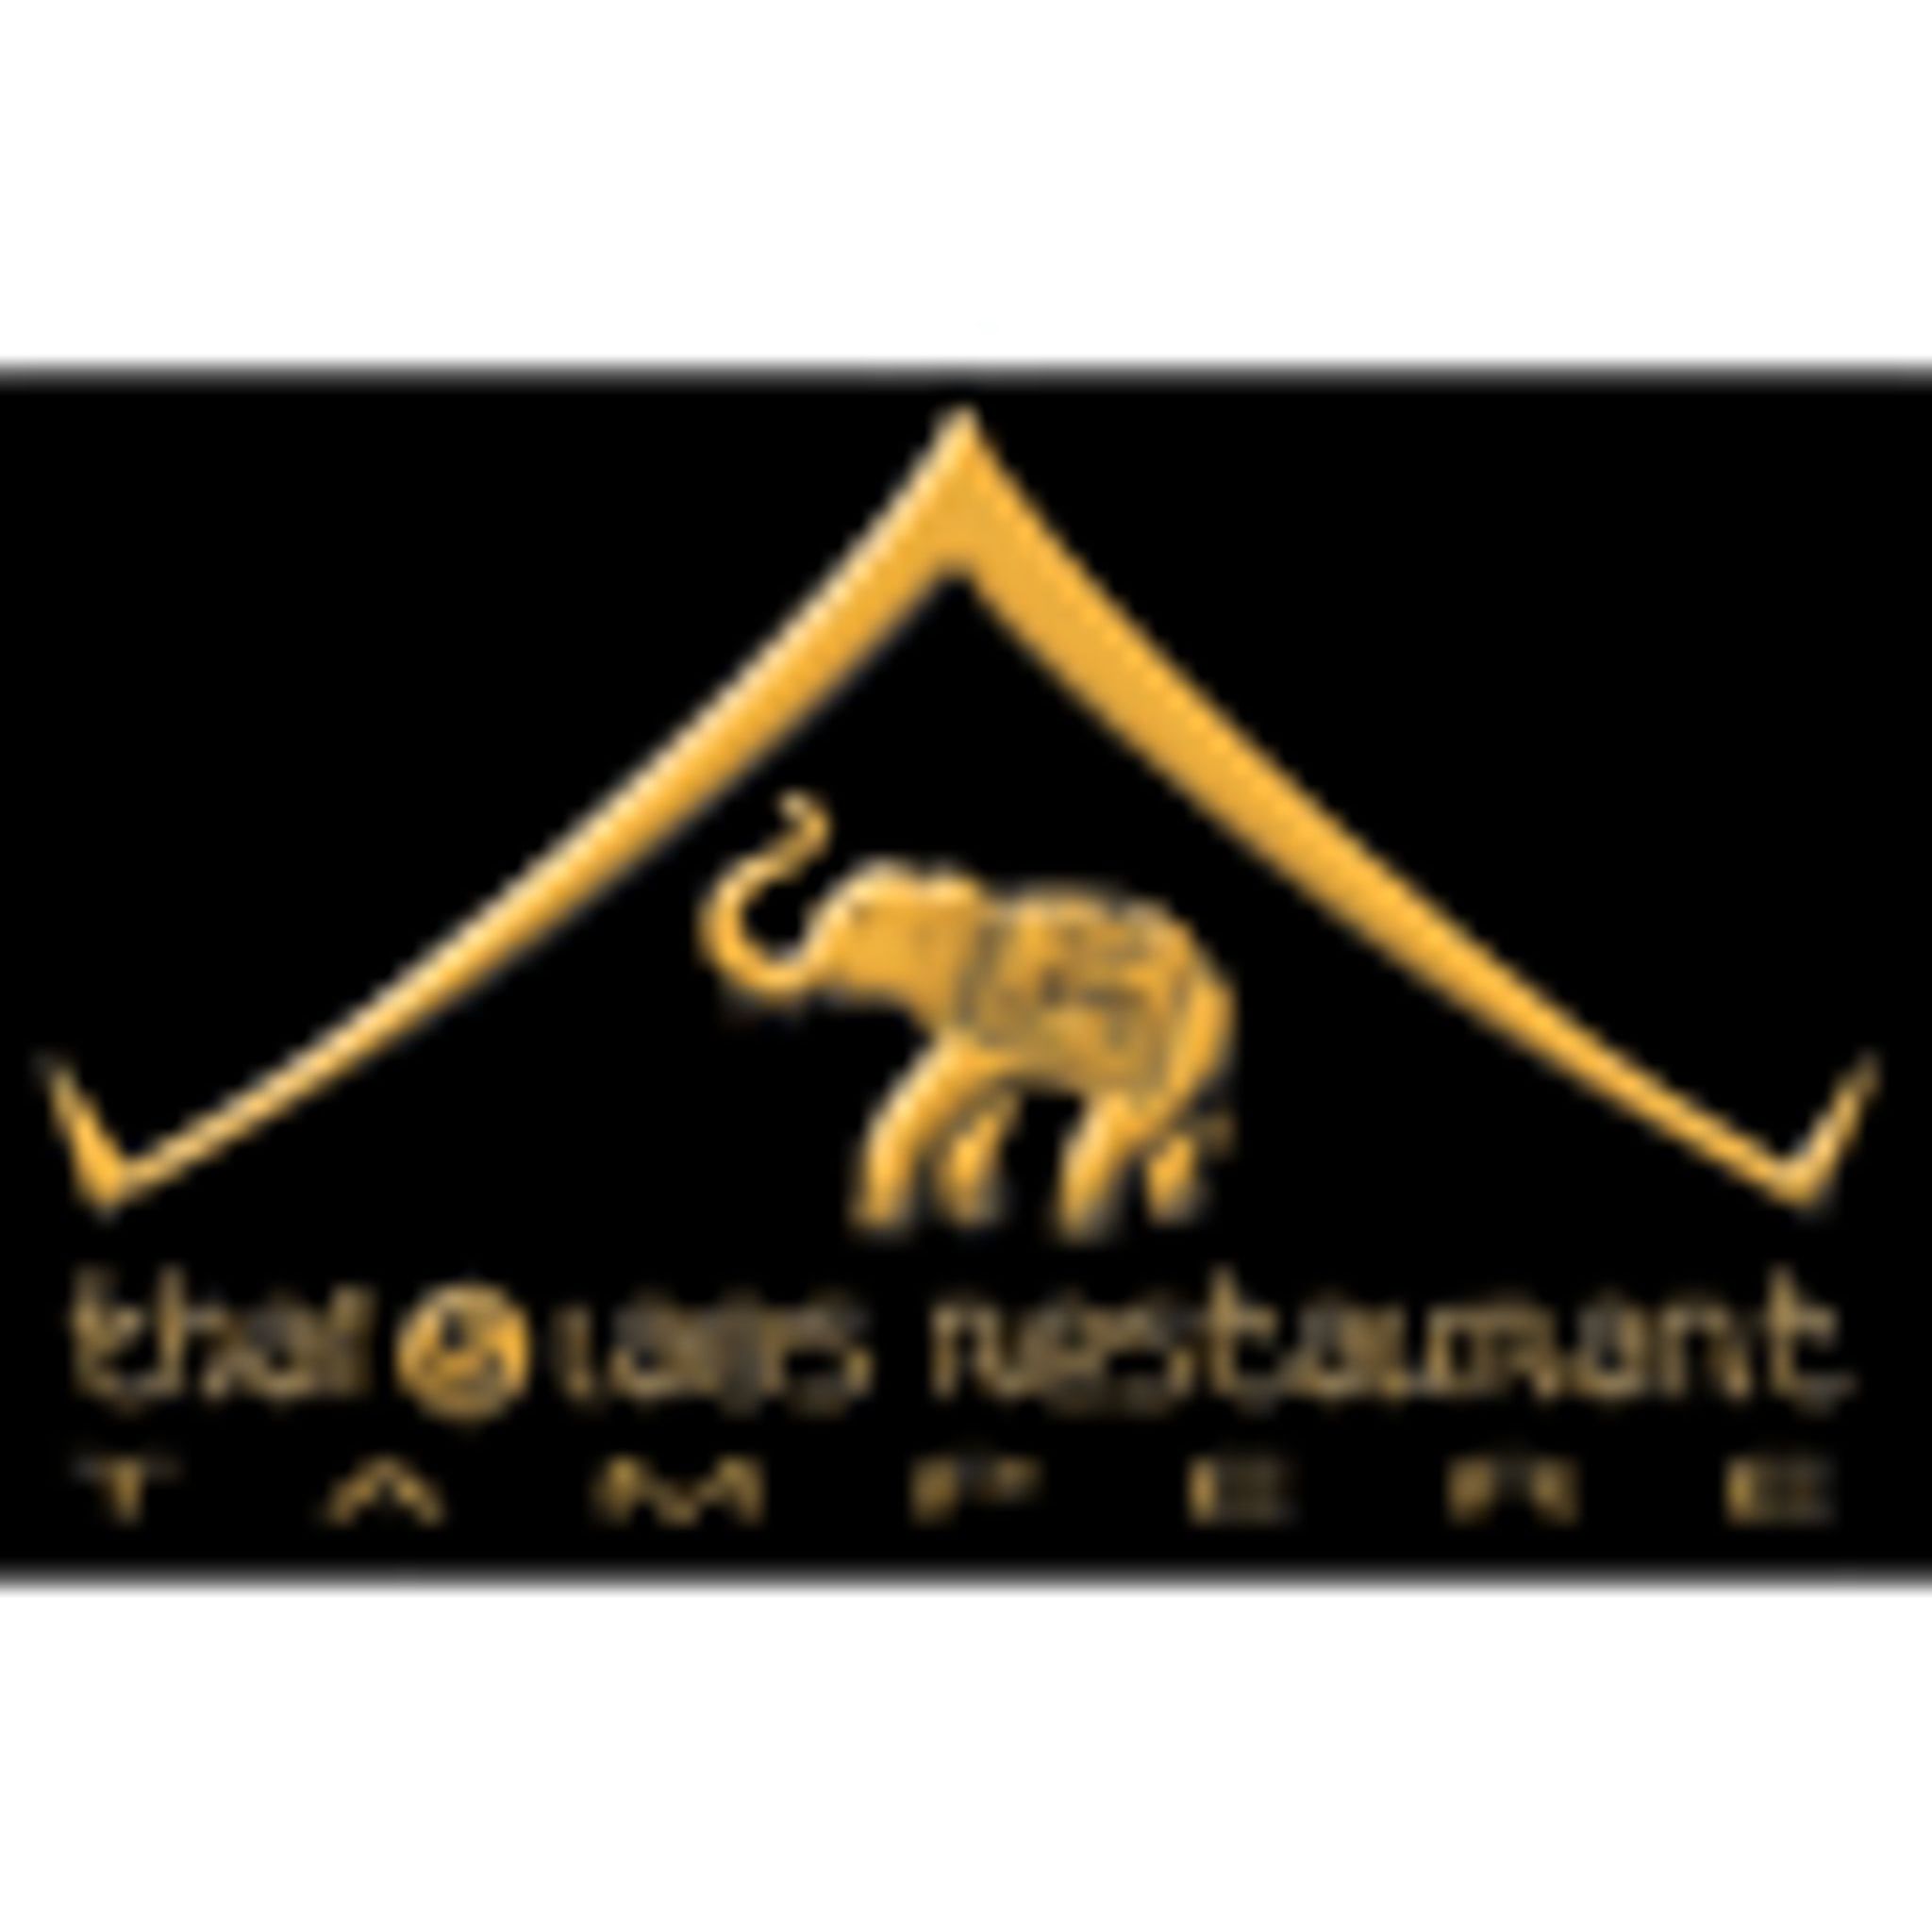 Thai & Laos Restaurant Logo